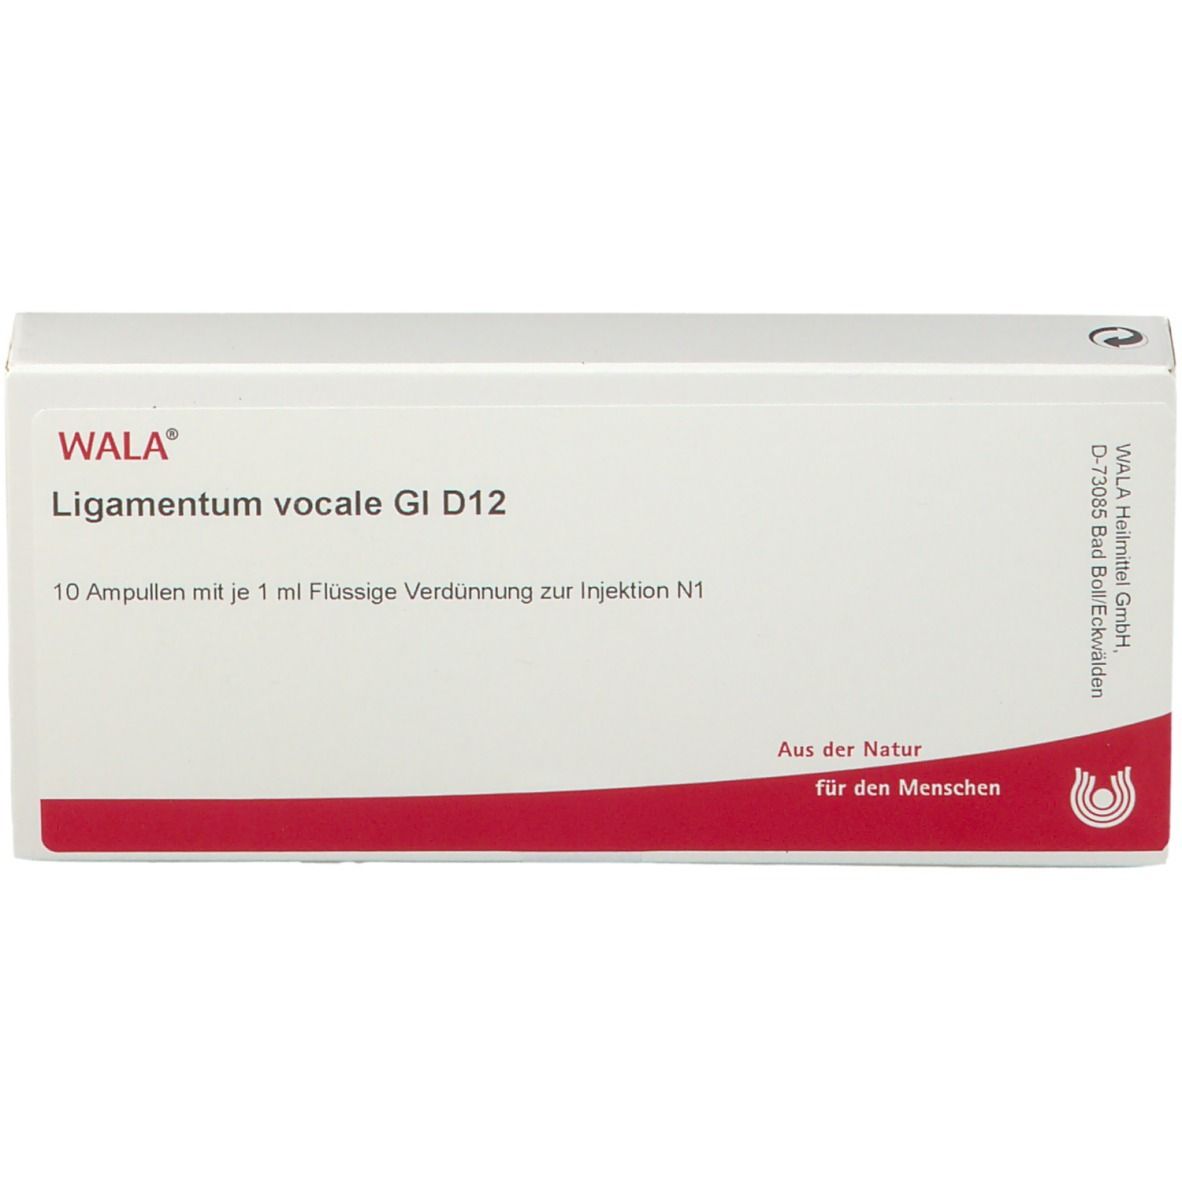 WALA® Ligamentum vocale Gl D 12